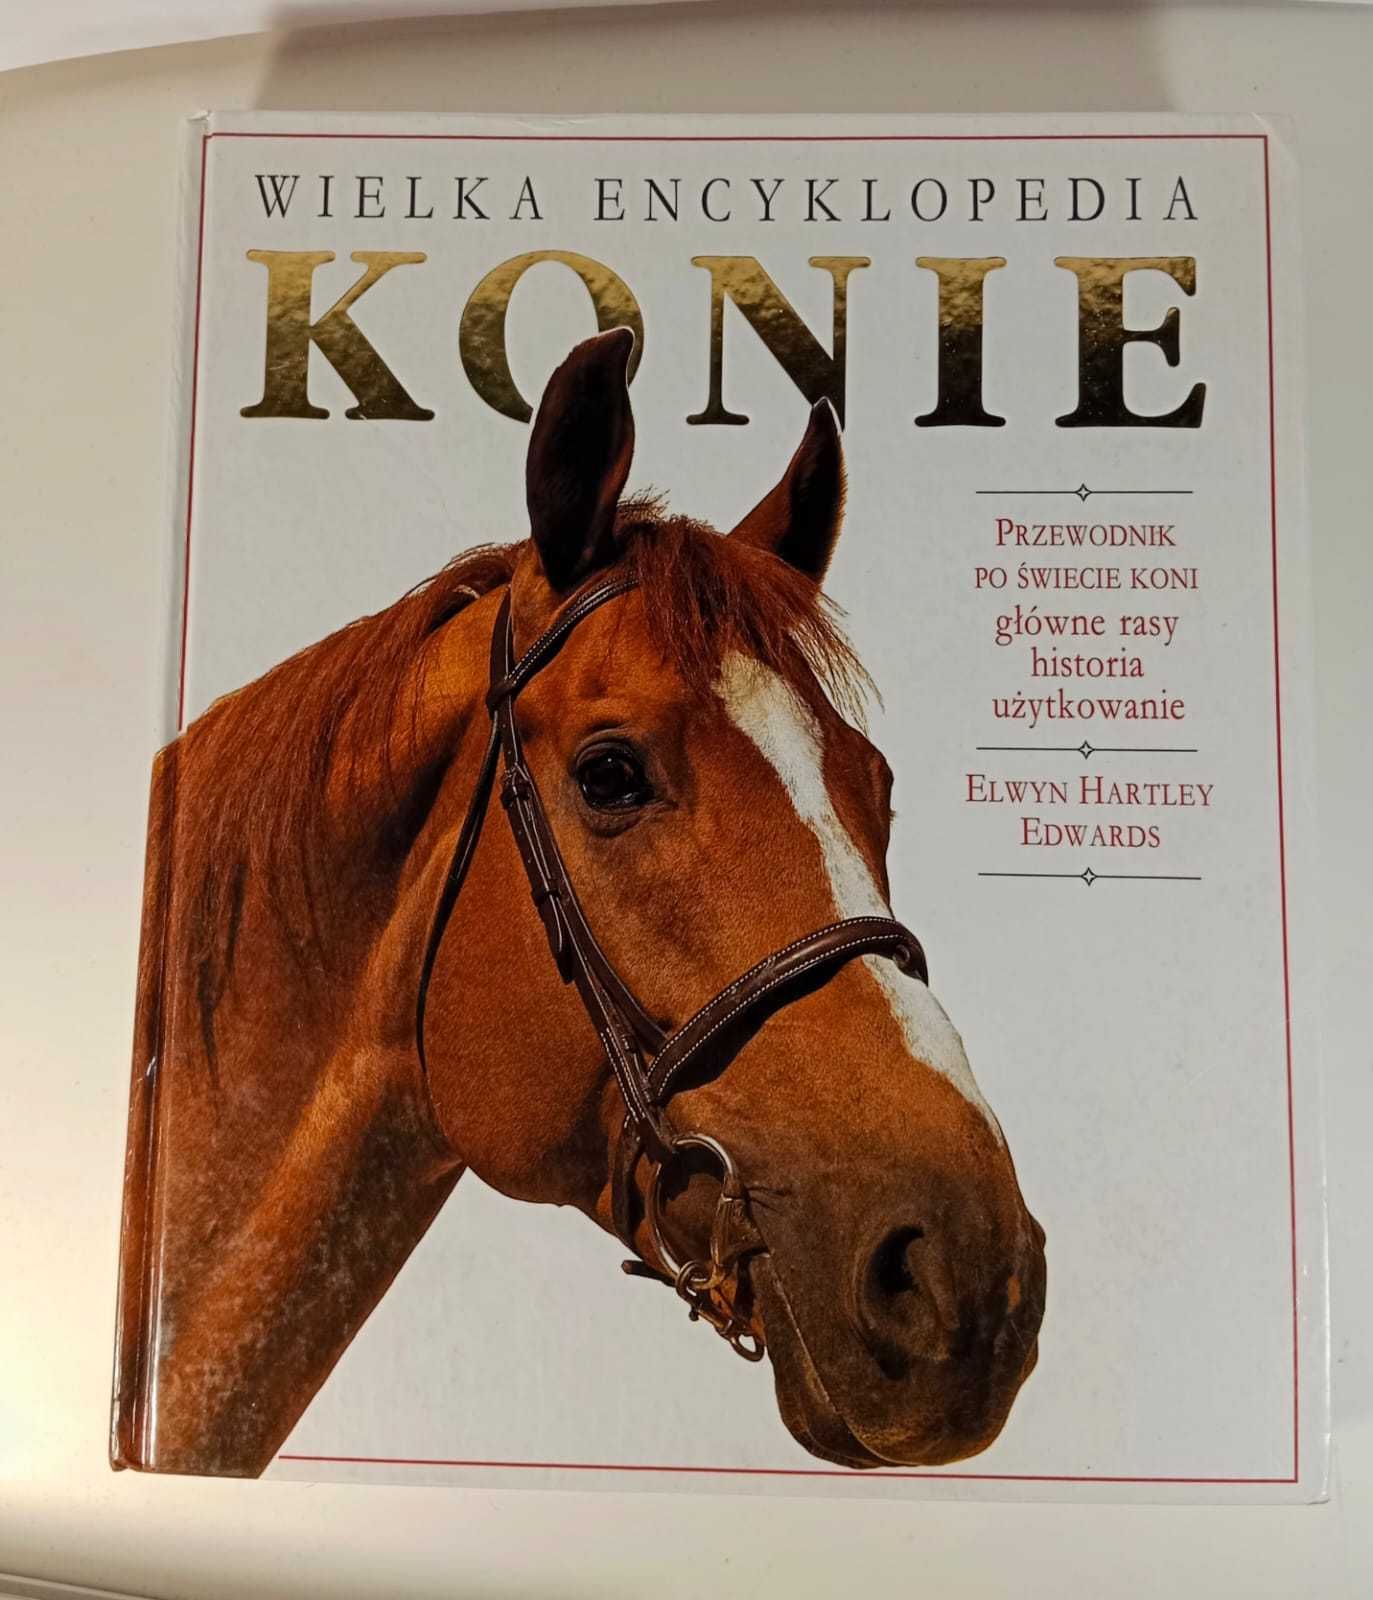 Książka Wielka Encyklopedia Konie